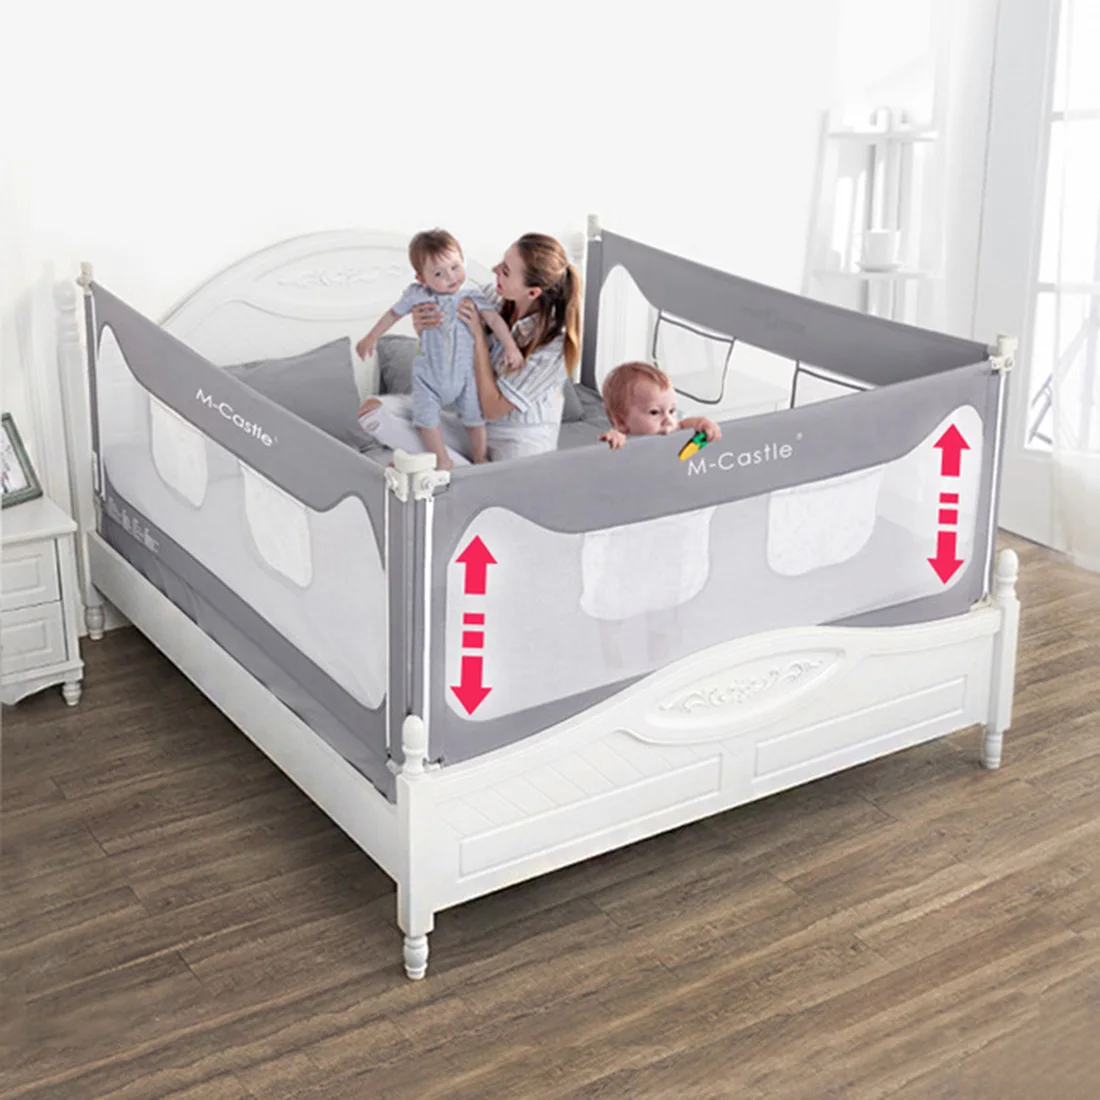 2,0 м детская кровать рельс защита вертикального подъема защита от падения кровать-рельс для кроватки рельсы безопасности ограждение ребенка безопасный предохранитель